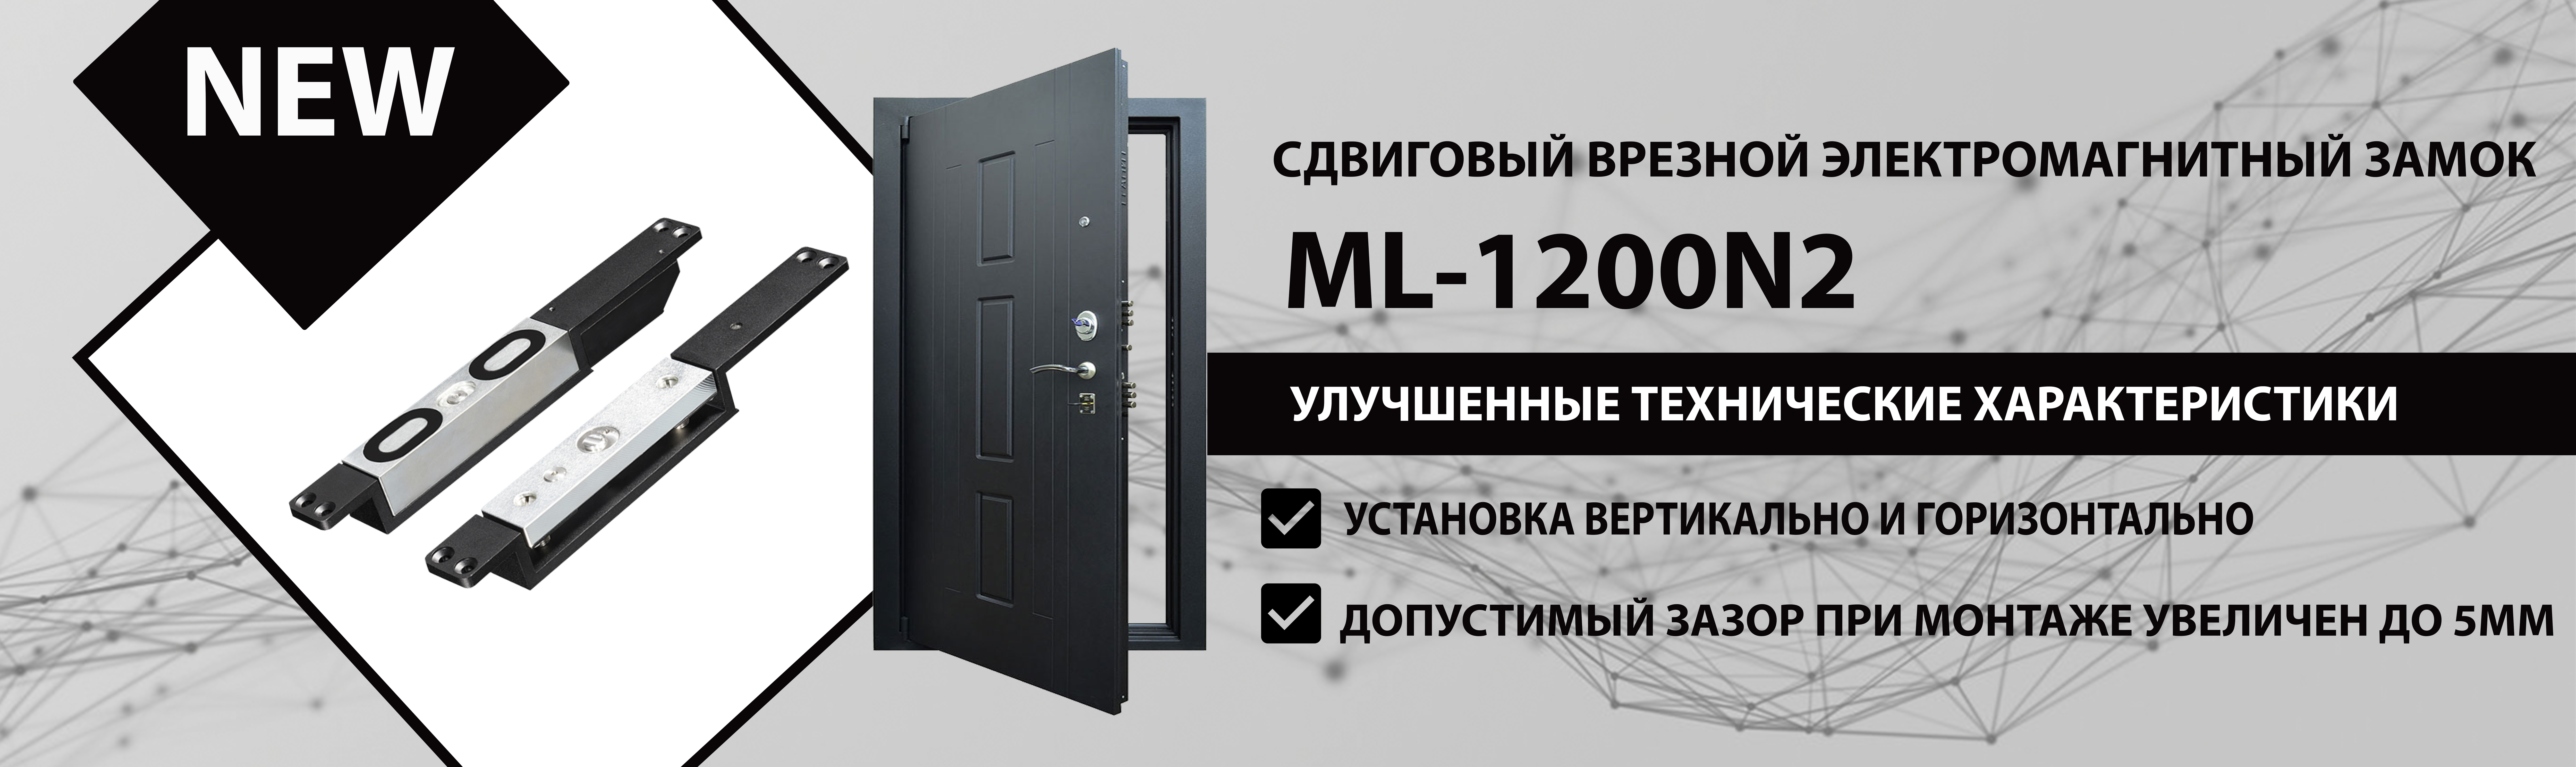 Сдвиговый врезной электромагнитный замок ML-1200N2 поступил в продажу!